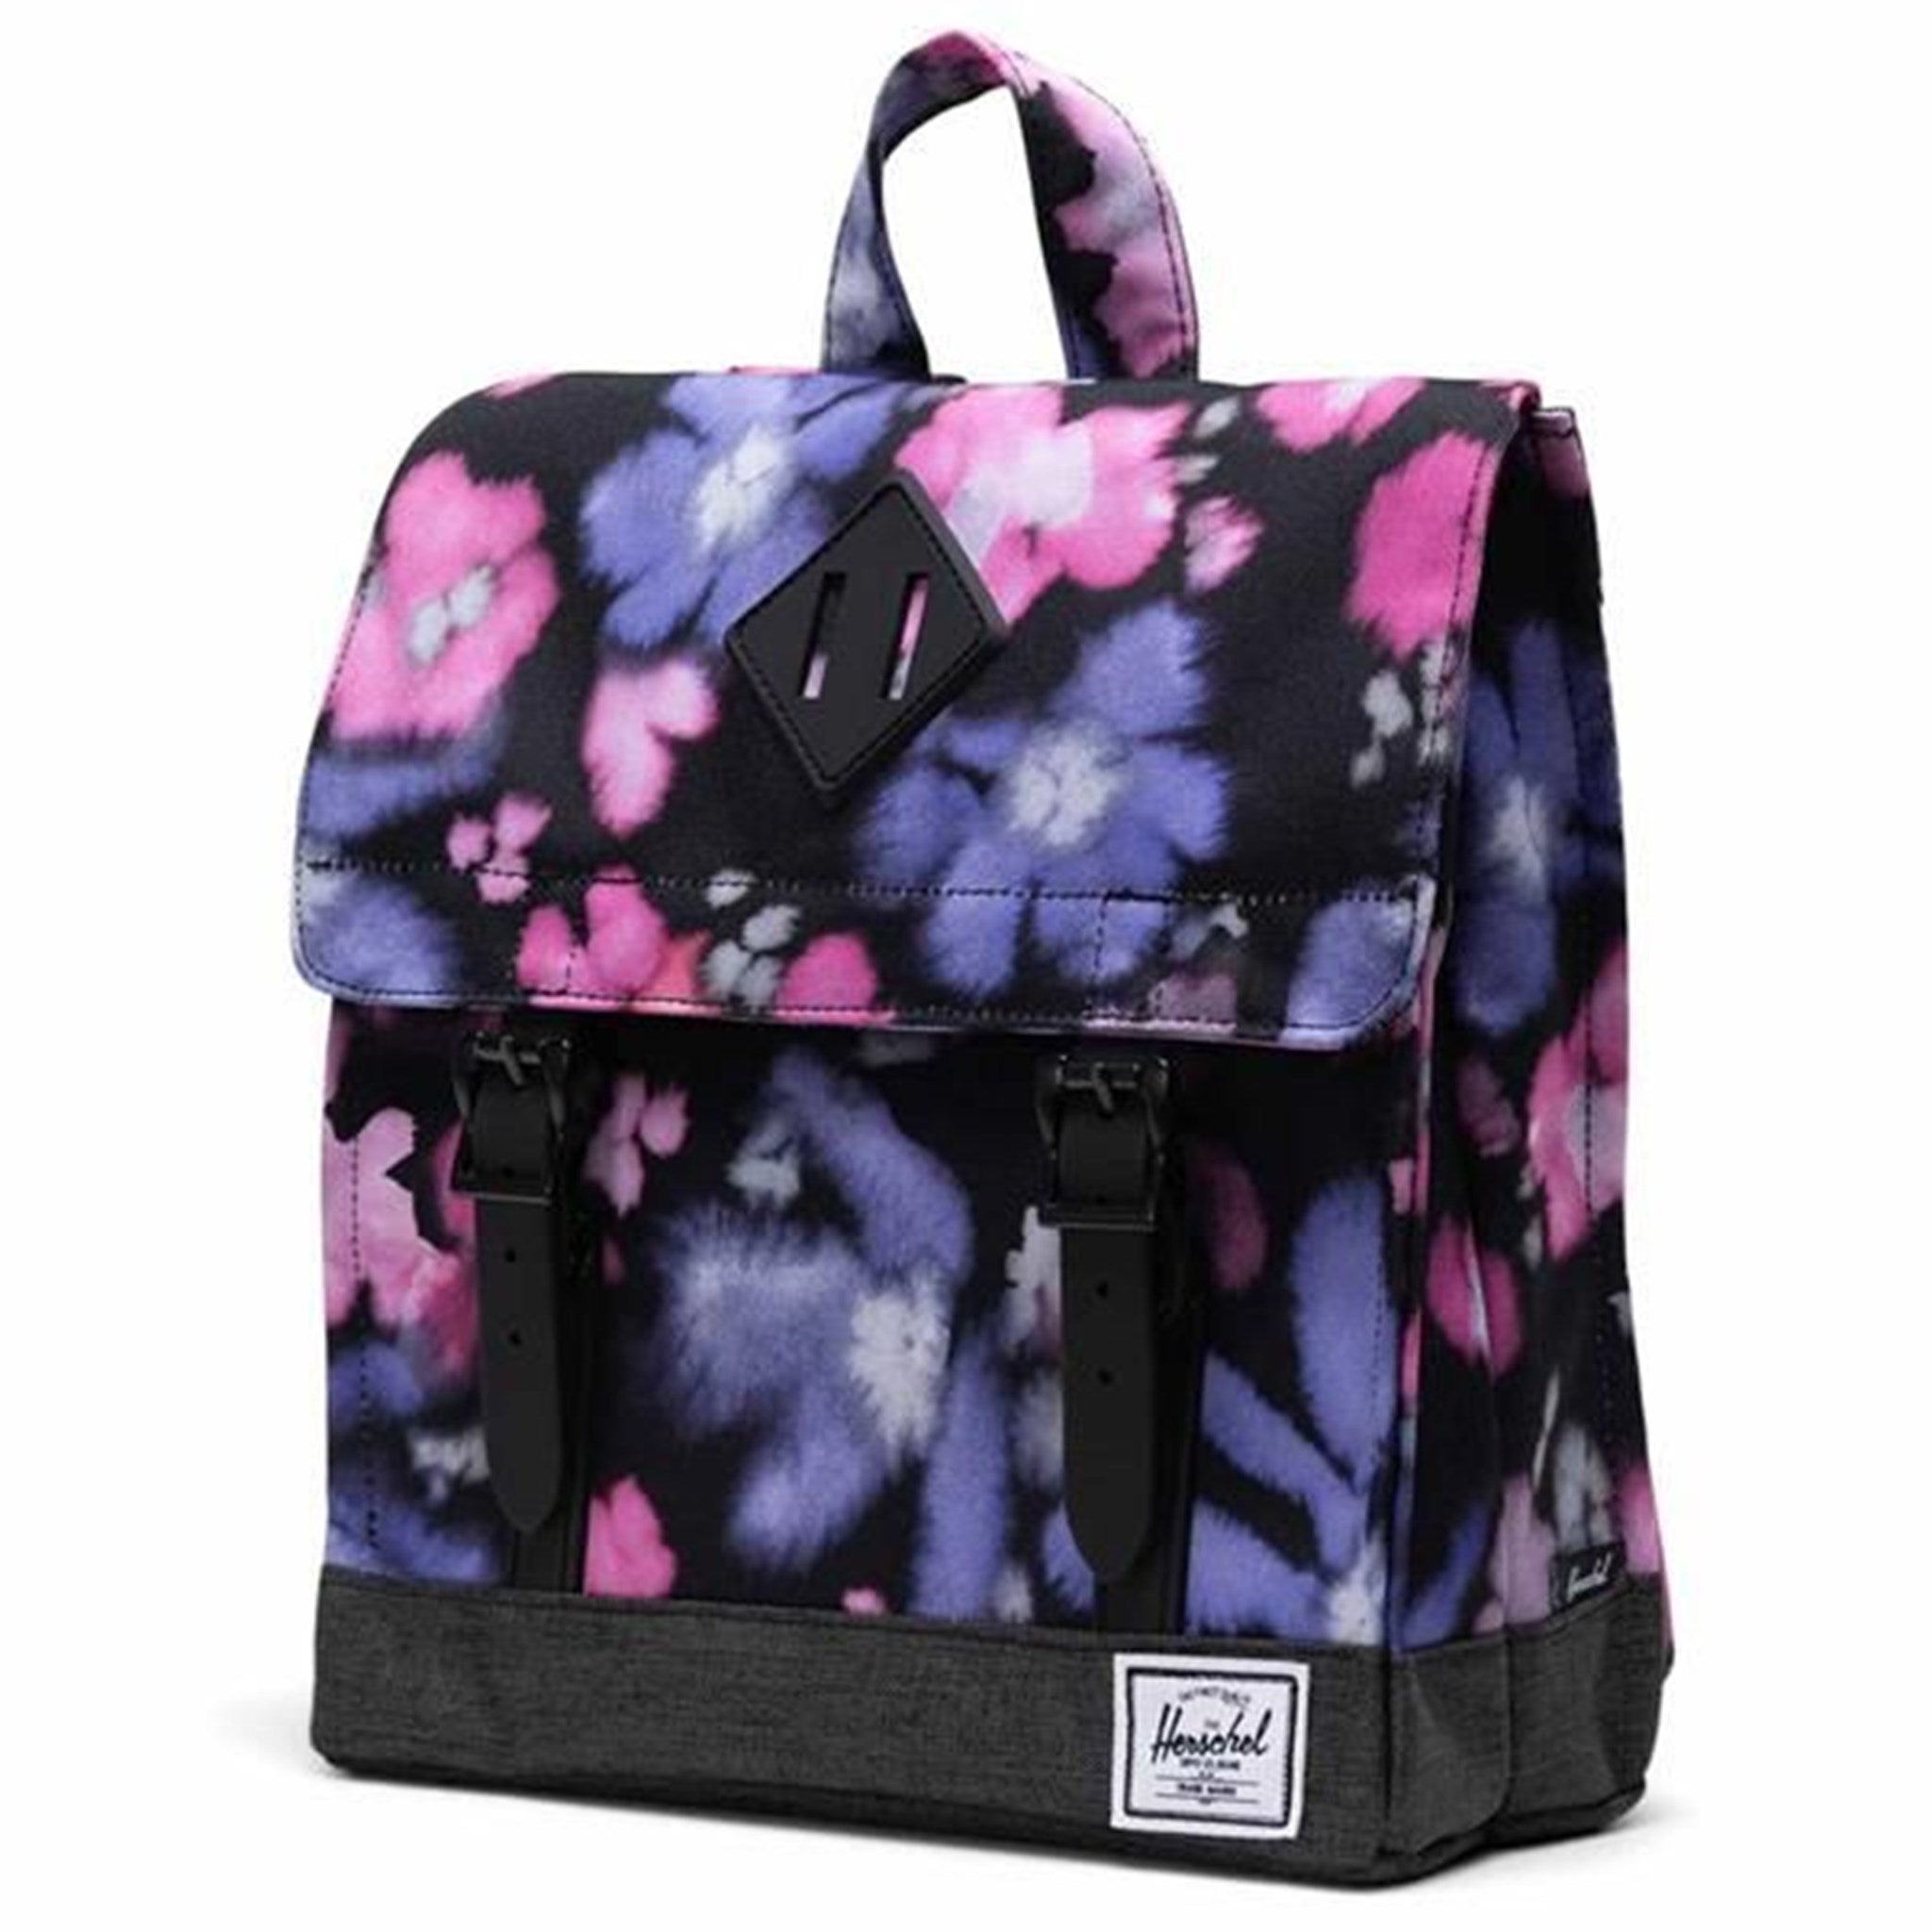 Herschel Survey Kids Backpack Blurry Floral/Black Crosshatch 3